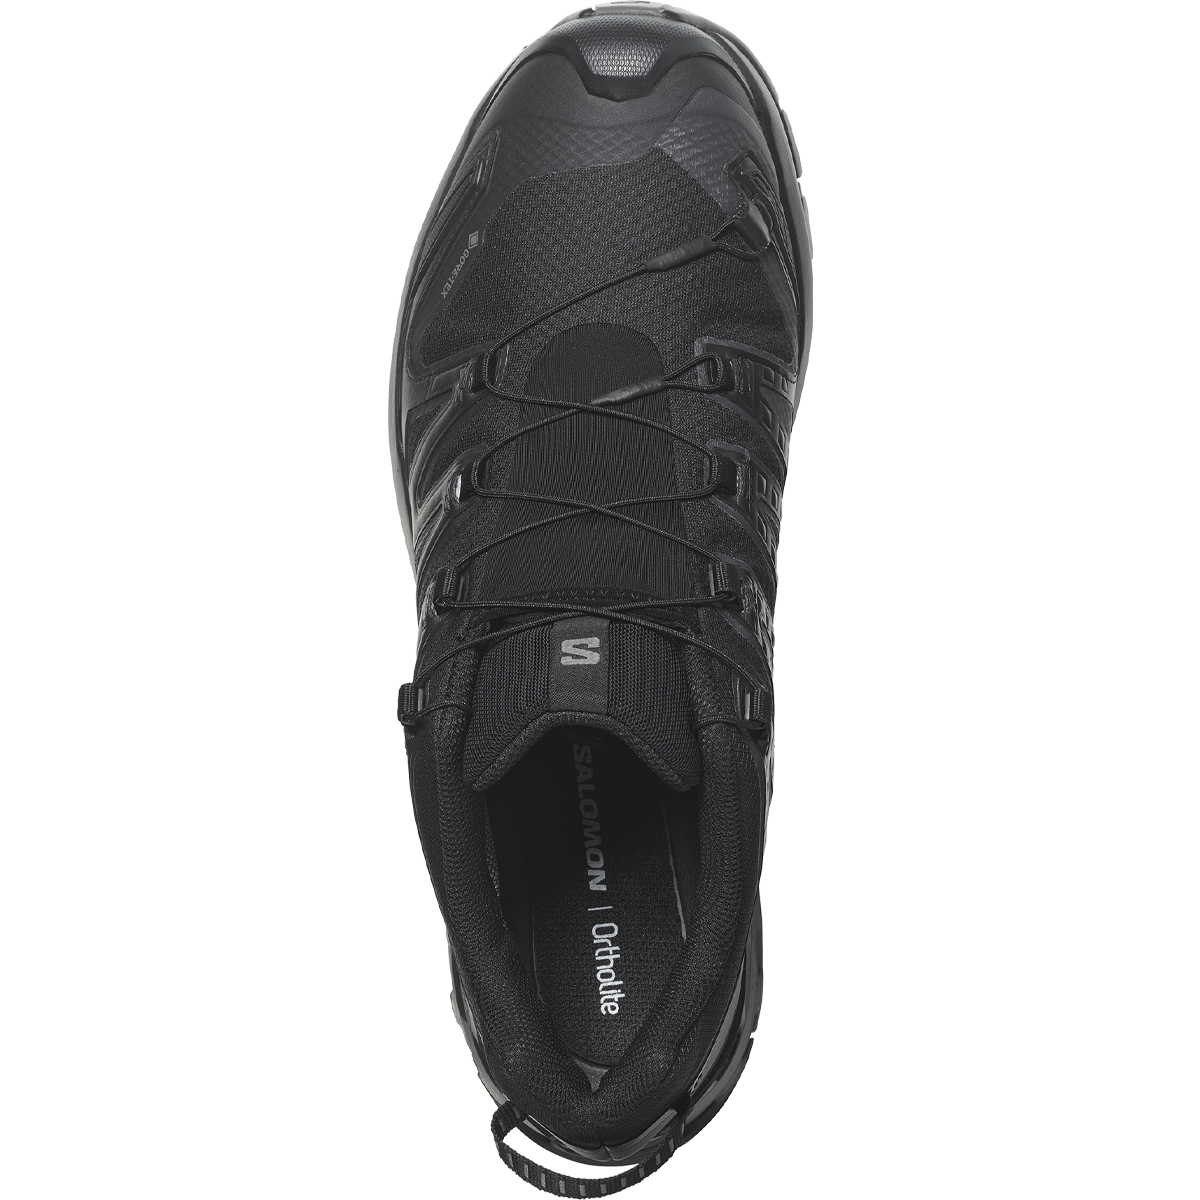 Salomon Men's xA Pro 3D V9 GORE-TEX Trail Running Shoes, Black / Phantom / Pewter / 10.5